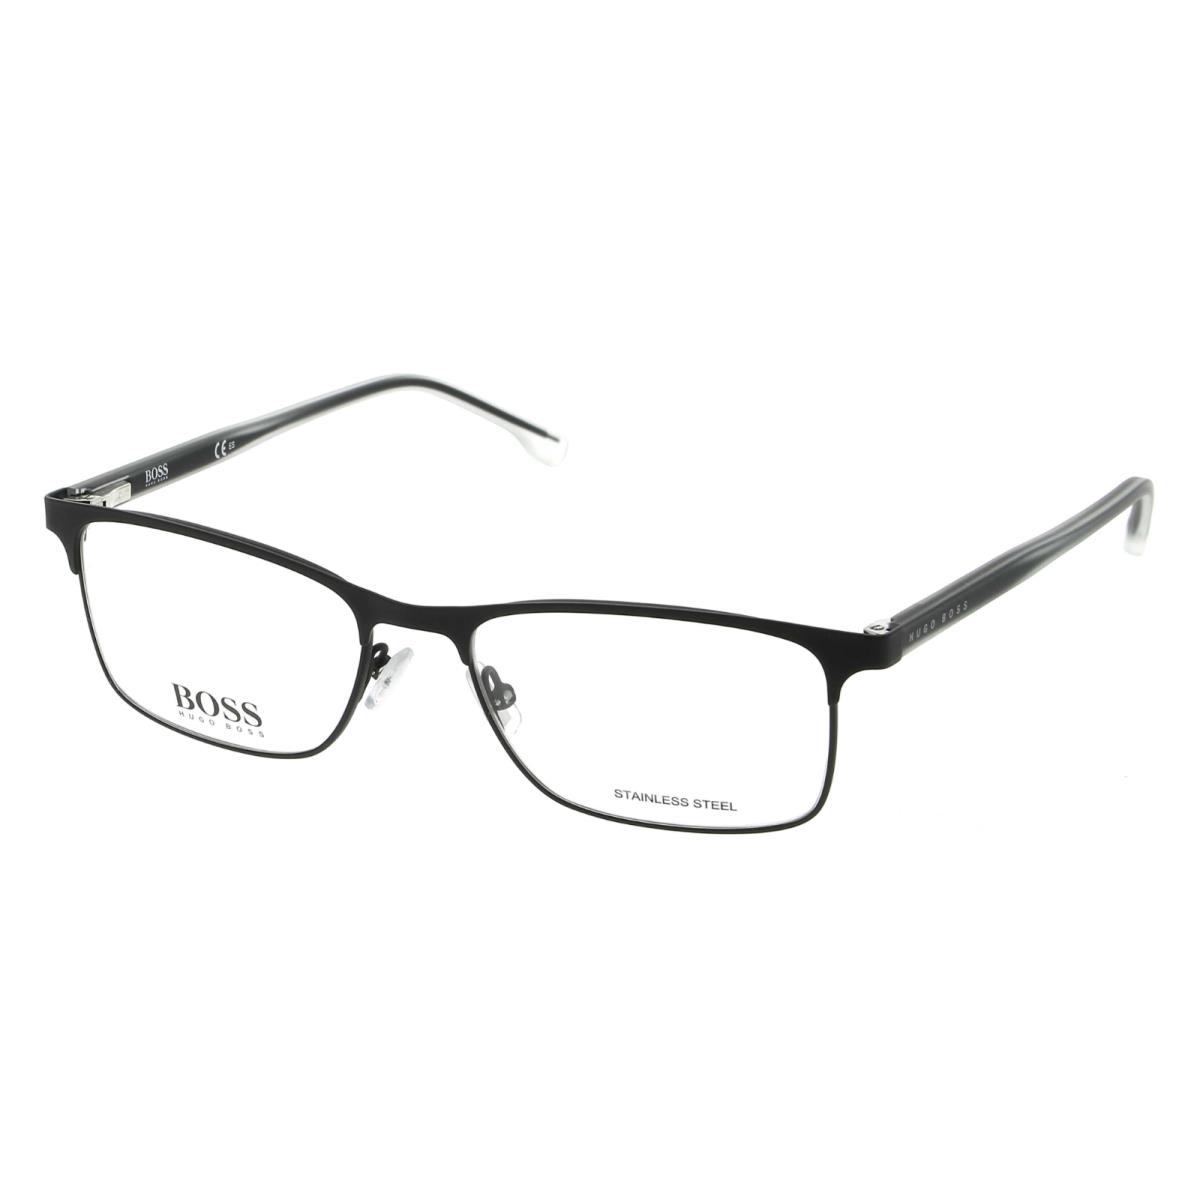 Hugo Boss Eyeglasses Boss 0967 003 54-17 145 Matte Black Crystal Frames